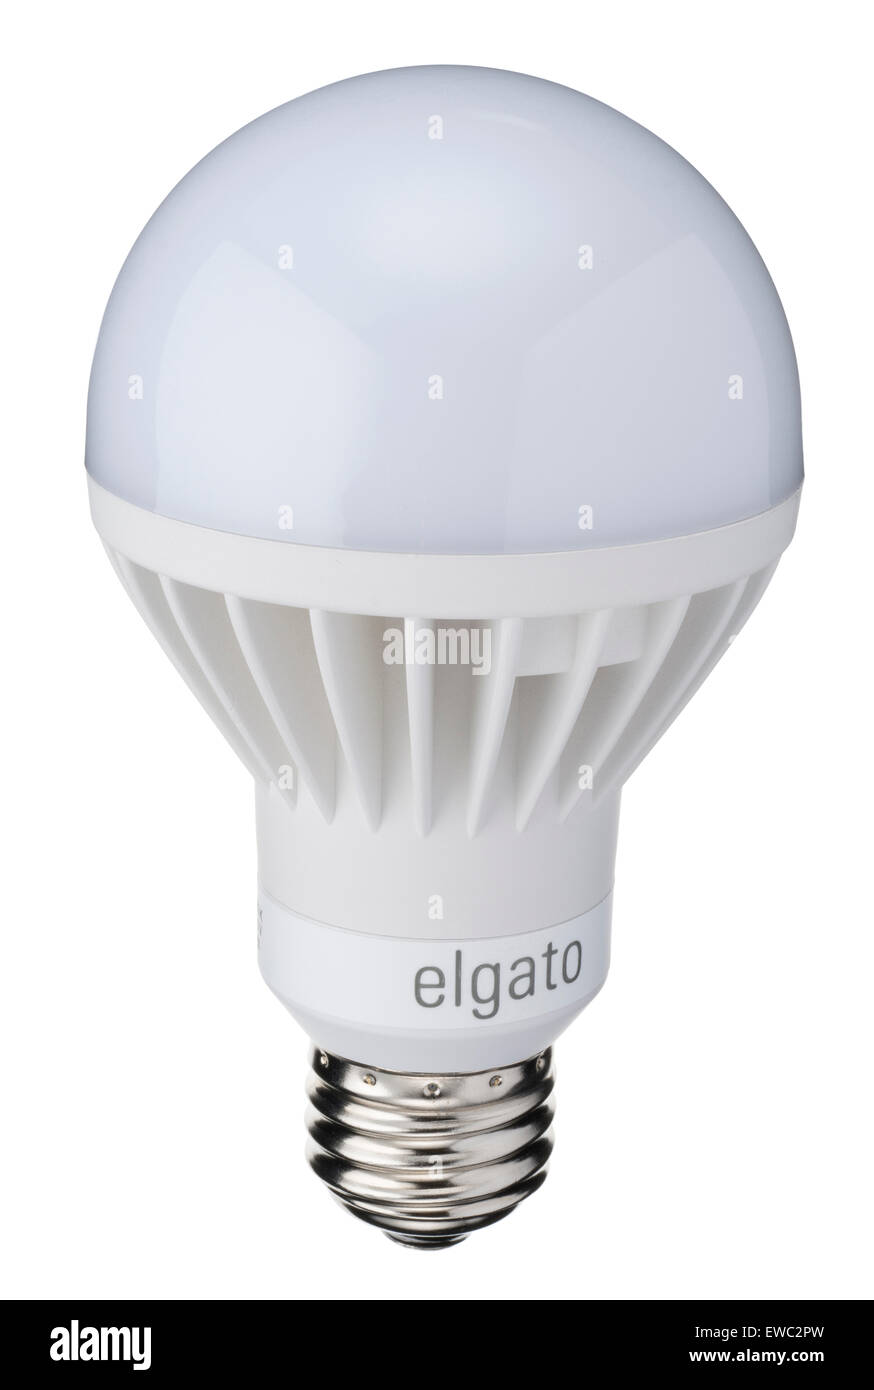 Elgato-LED Stimmung Glühbirne. Bluetooth app gesteuert Glühbirne, die farbiges Licht nach voreingestellten Stimmungen ausstrahlt. Stockfoto